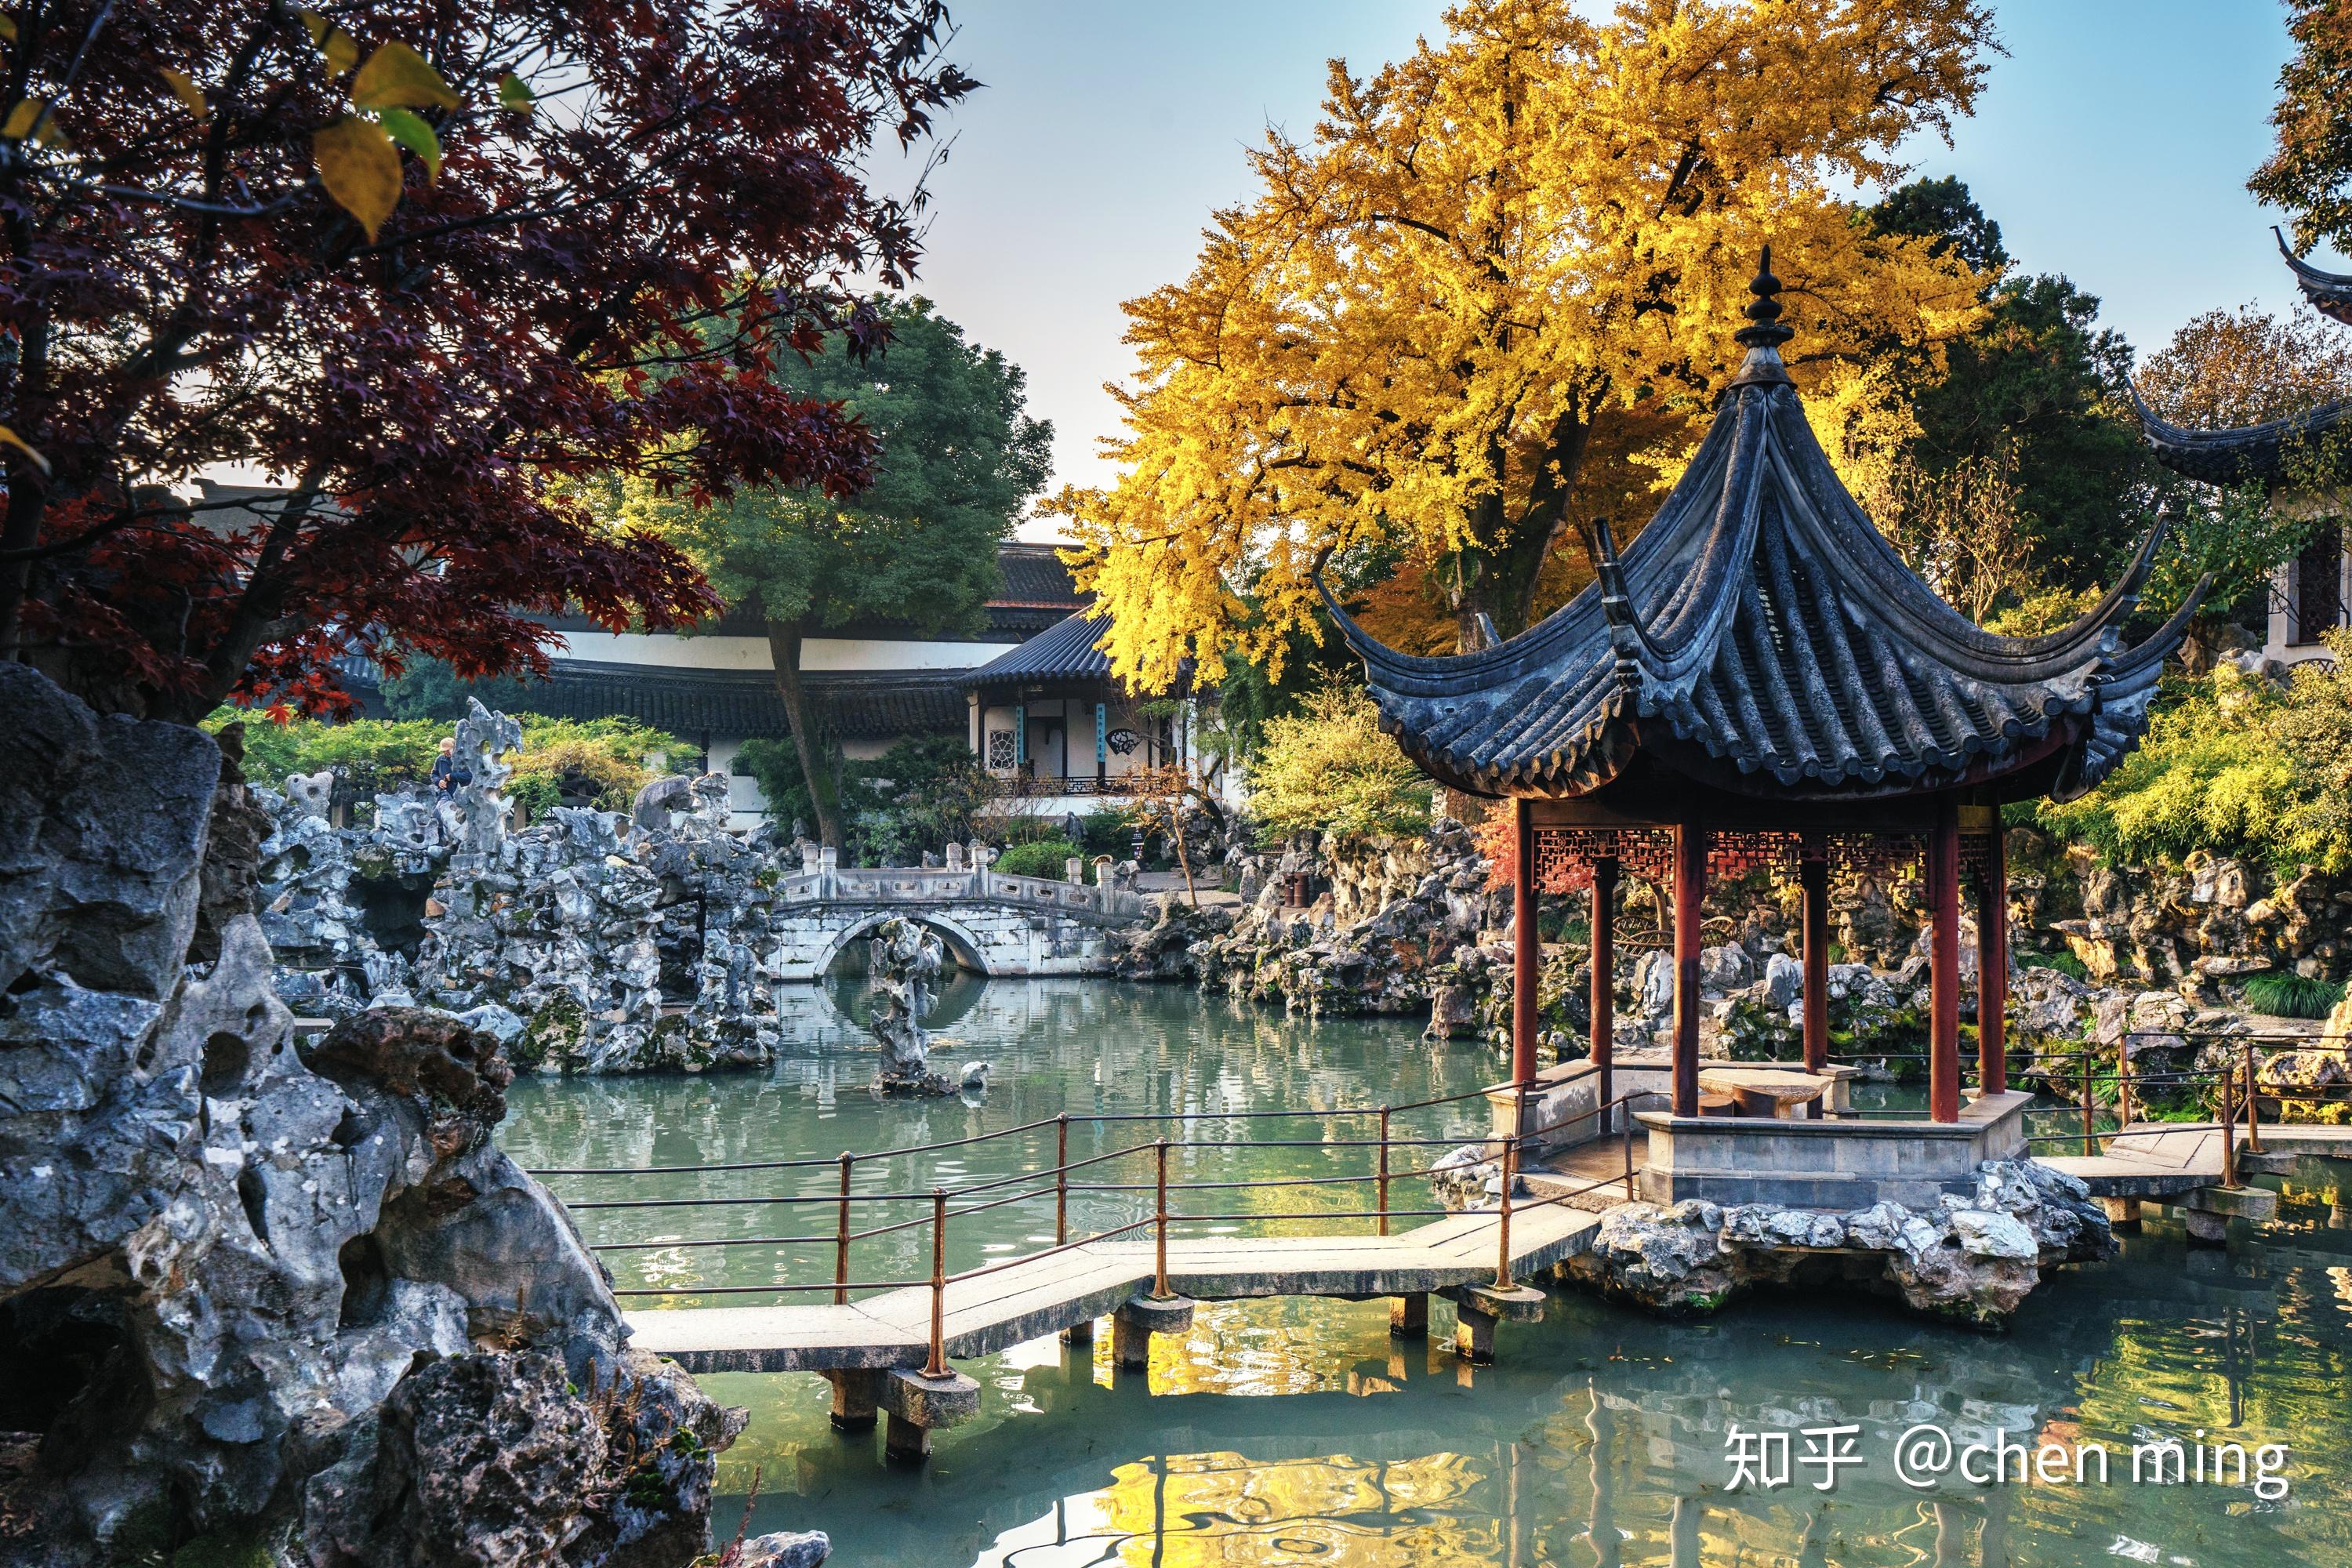 Suzhou, China: A garden story 2,500 years in the making | Garden ...